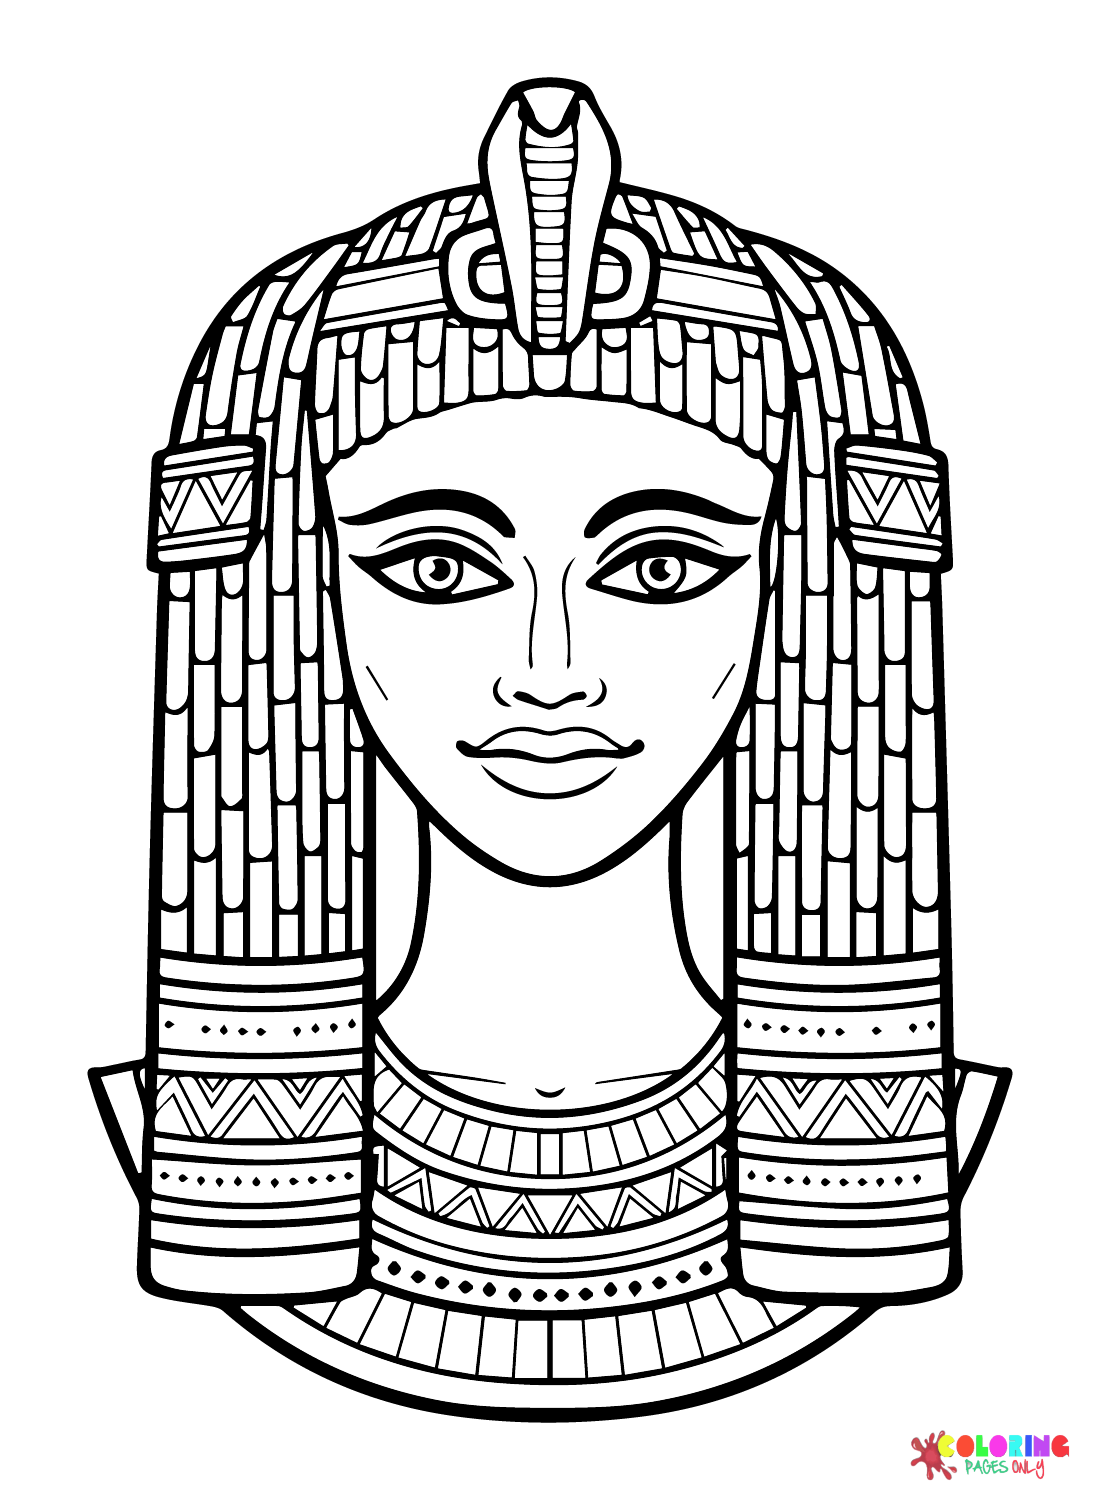 Livre o Antigo Egito do Antigo Egito